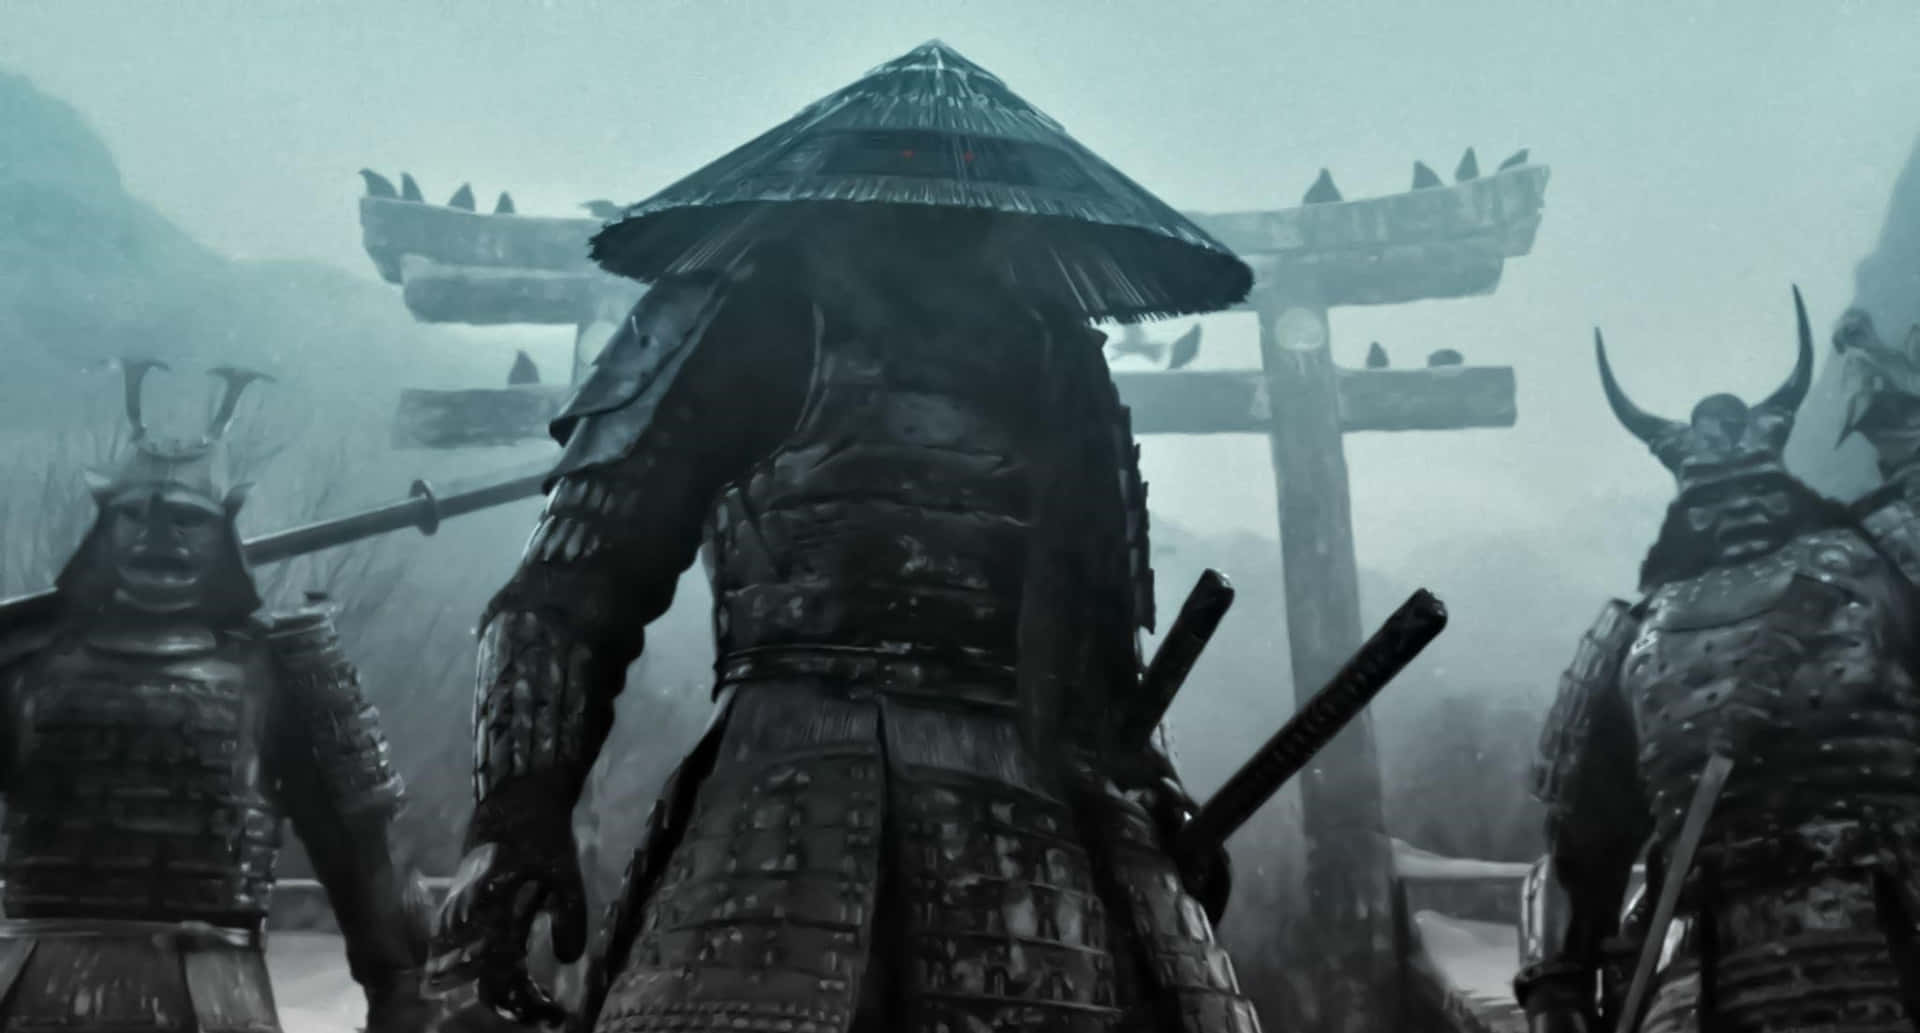 Immagini Dei Samurai